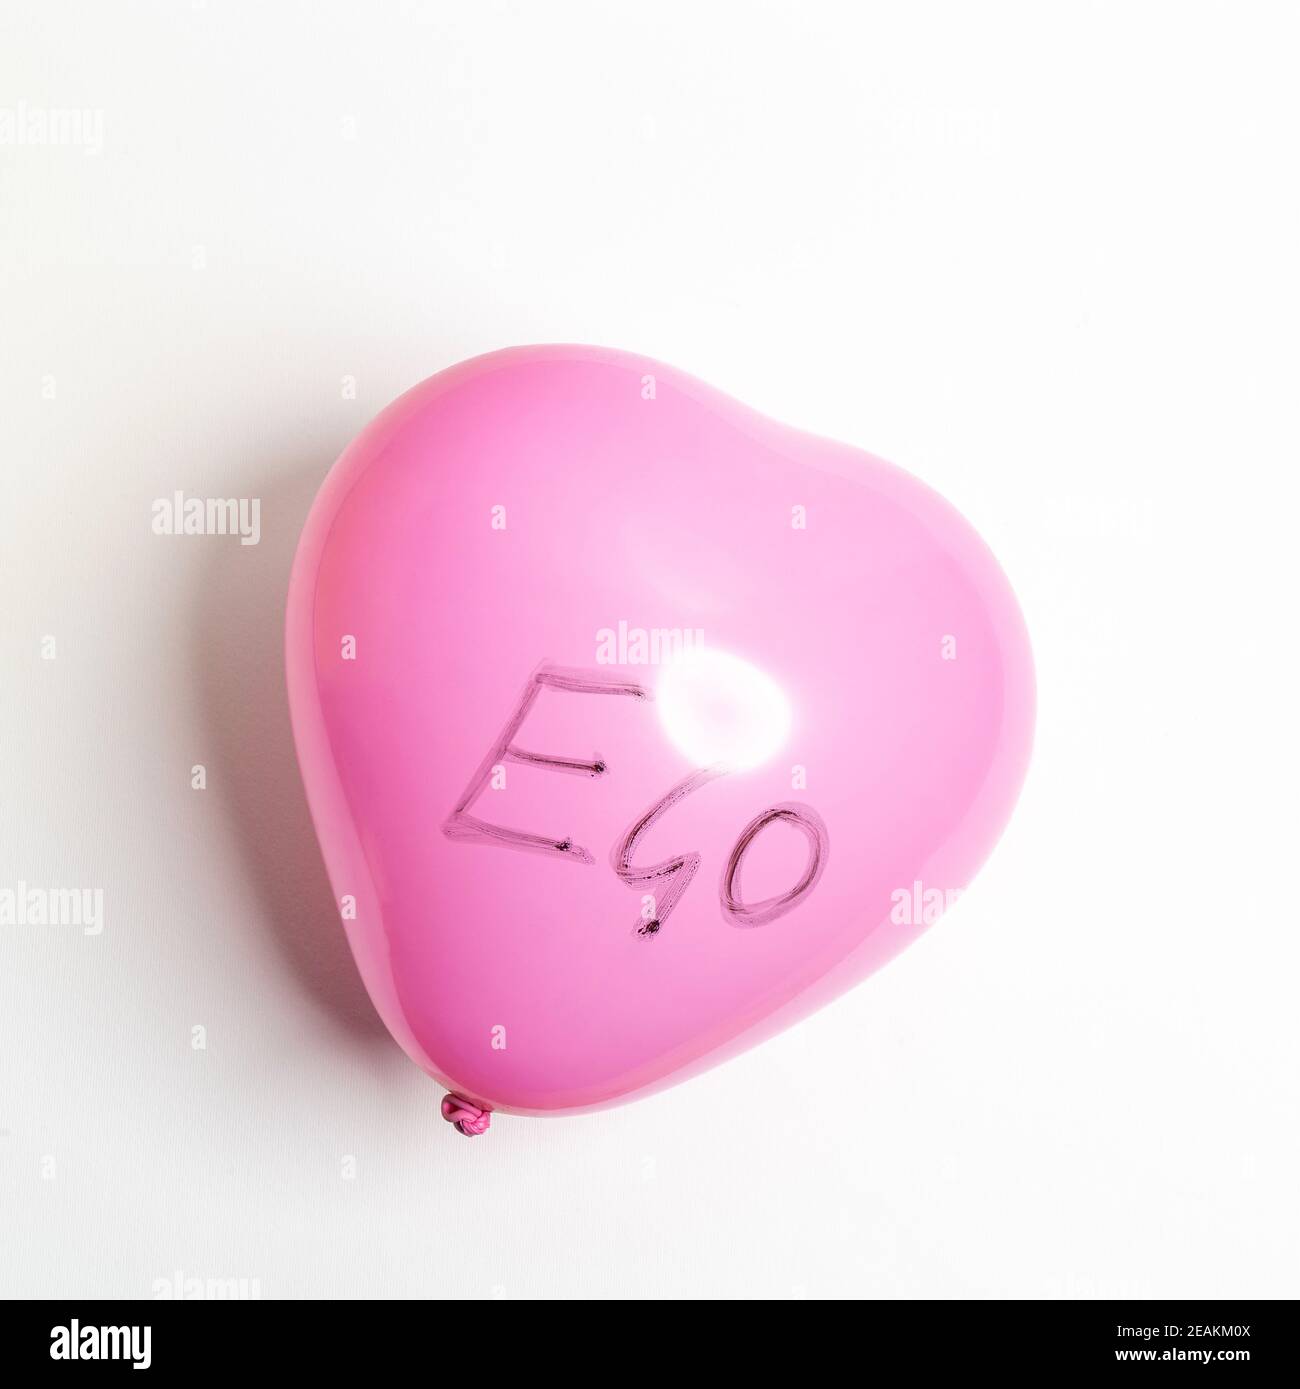 Ego balloon Stock Photo